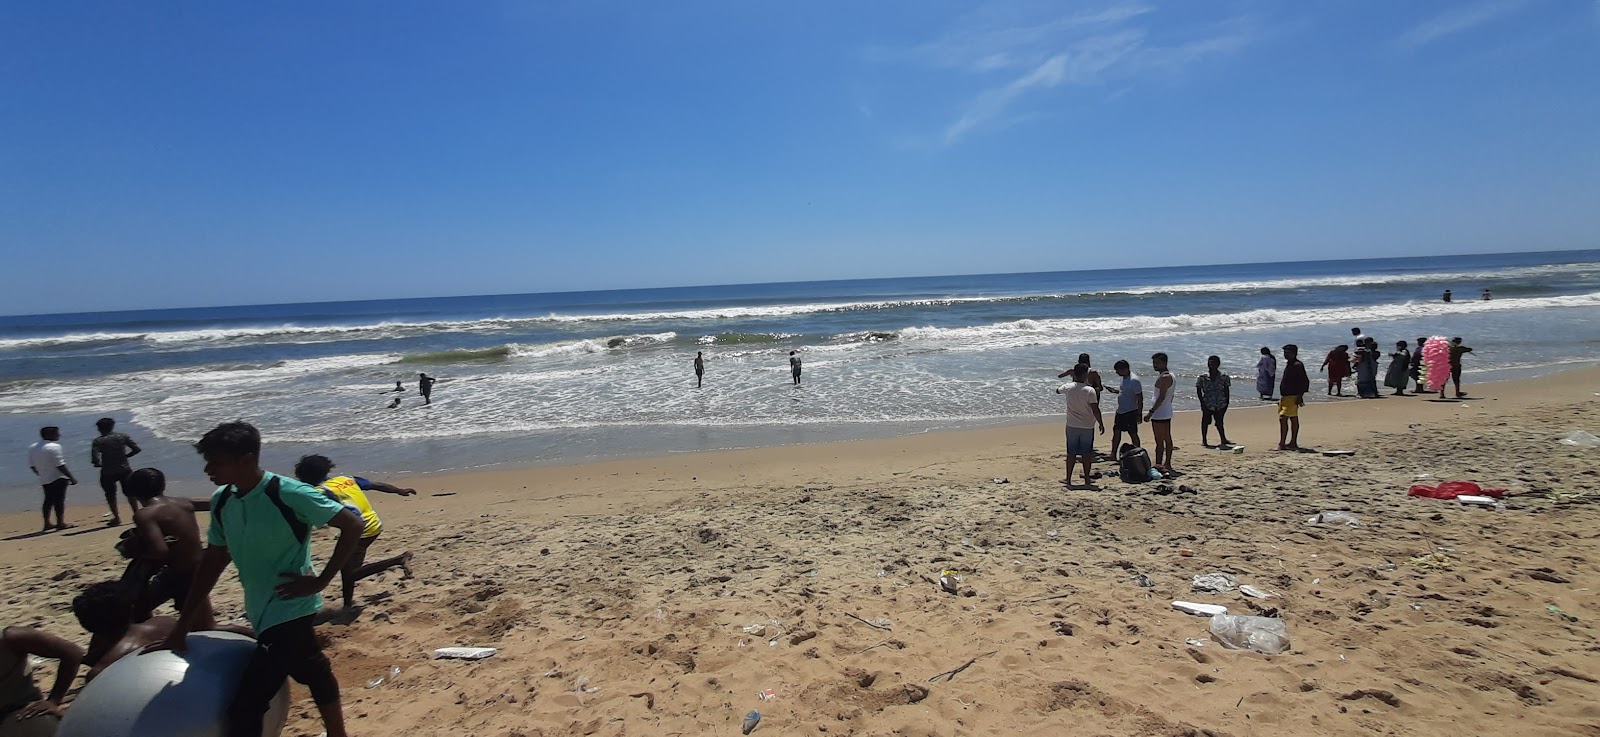 Patinapakkam Beach'in fotoğrafı geniş plaj ile birlikte